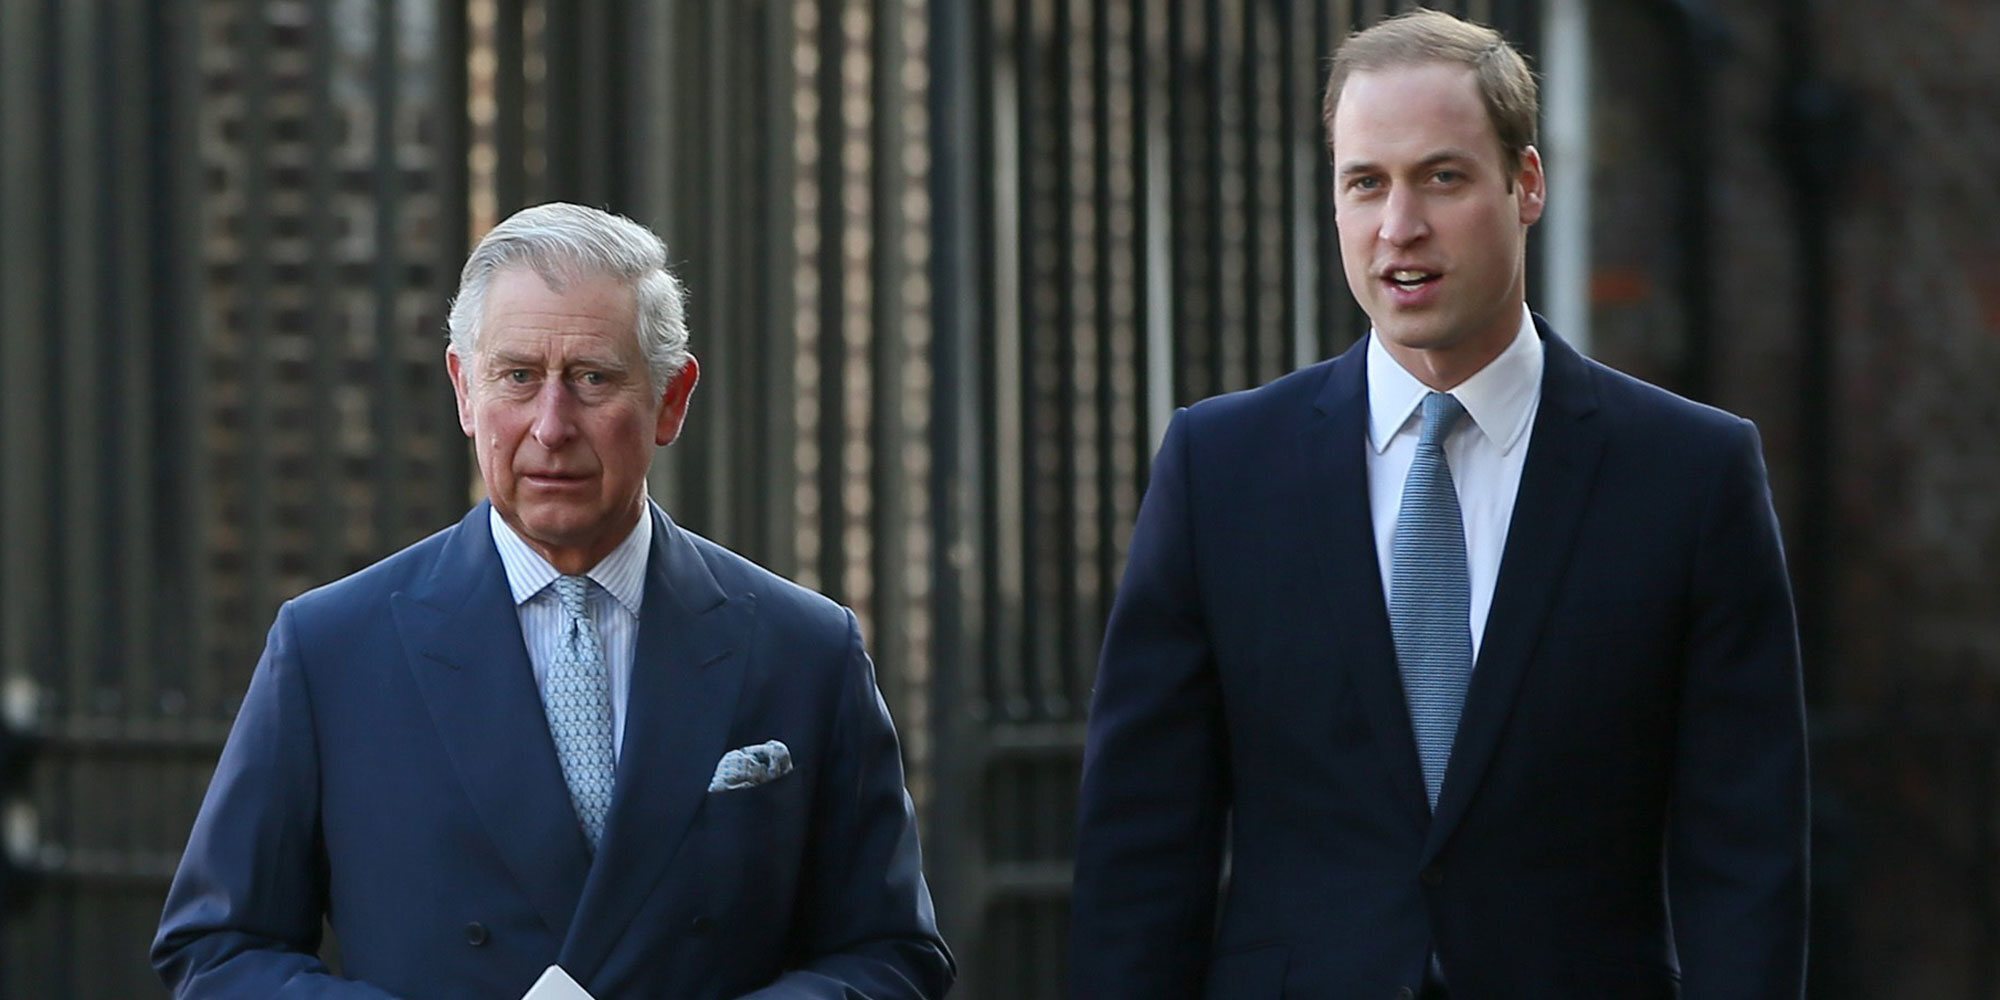 El Príncipe Carlos y el Príncipe Guillermo, unidos por una idea común y por su preocupación por la Reina Isabel